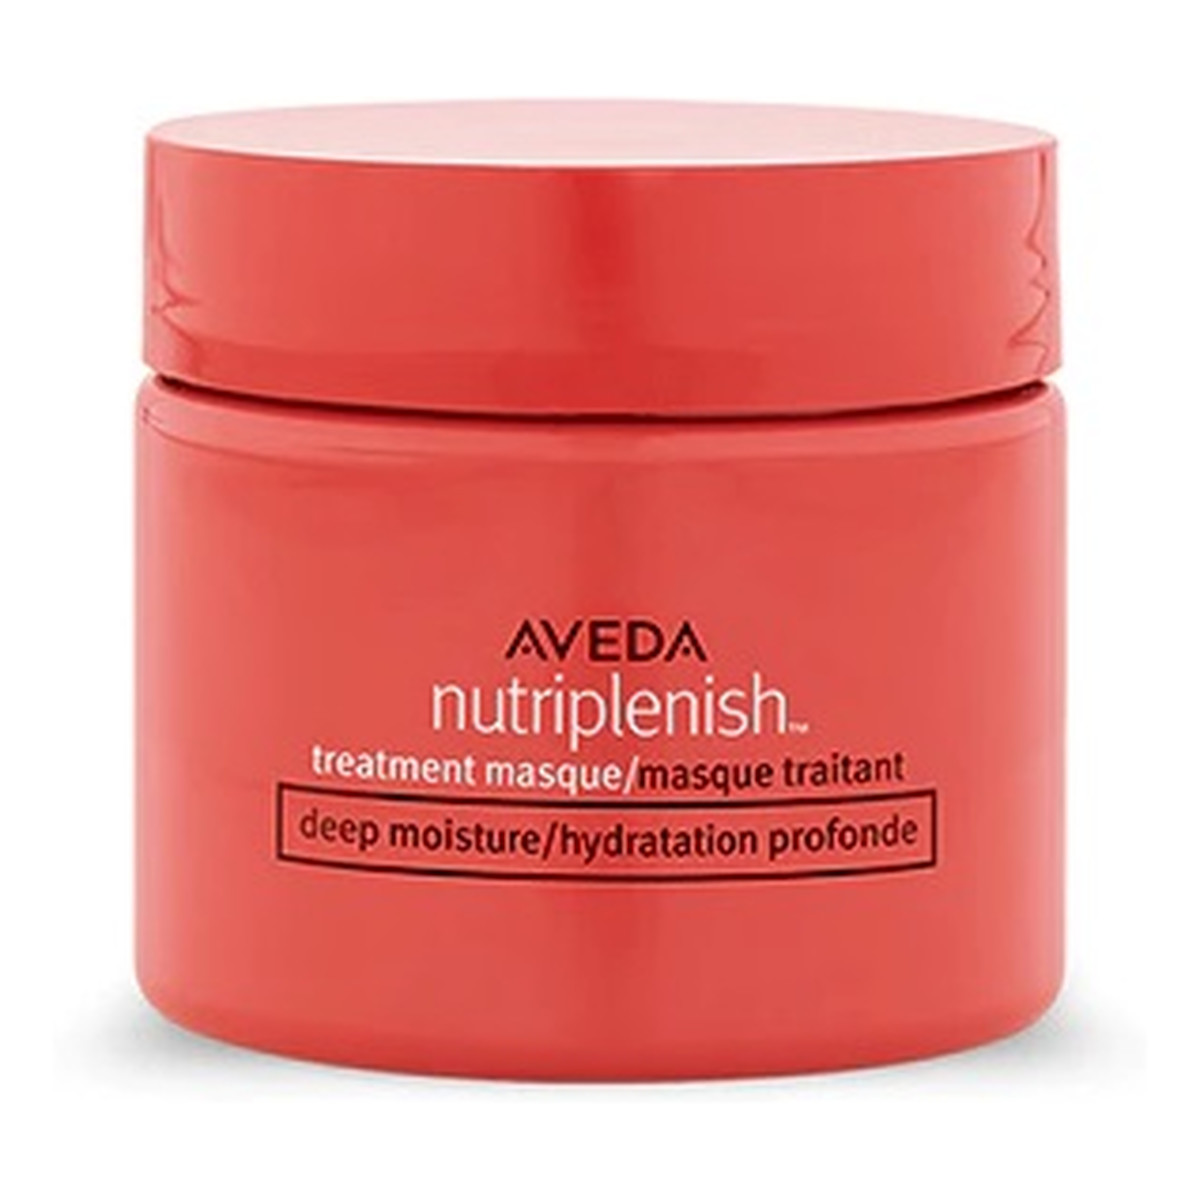 Aveda Nutriplenish treatment masque deep moisture głęboko nawilżająca maska do włosów 25ml